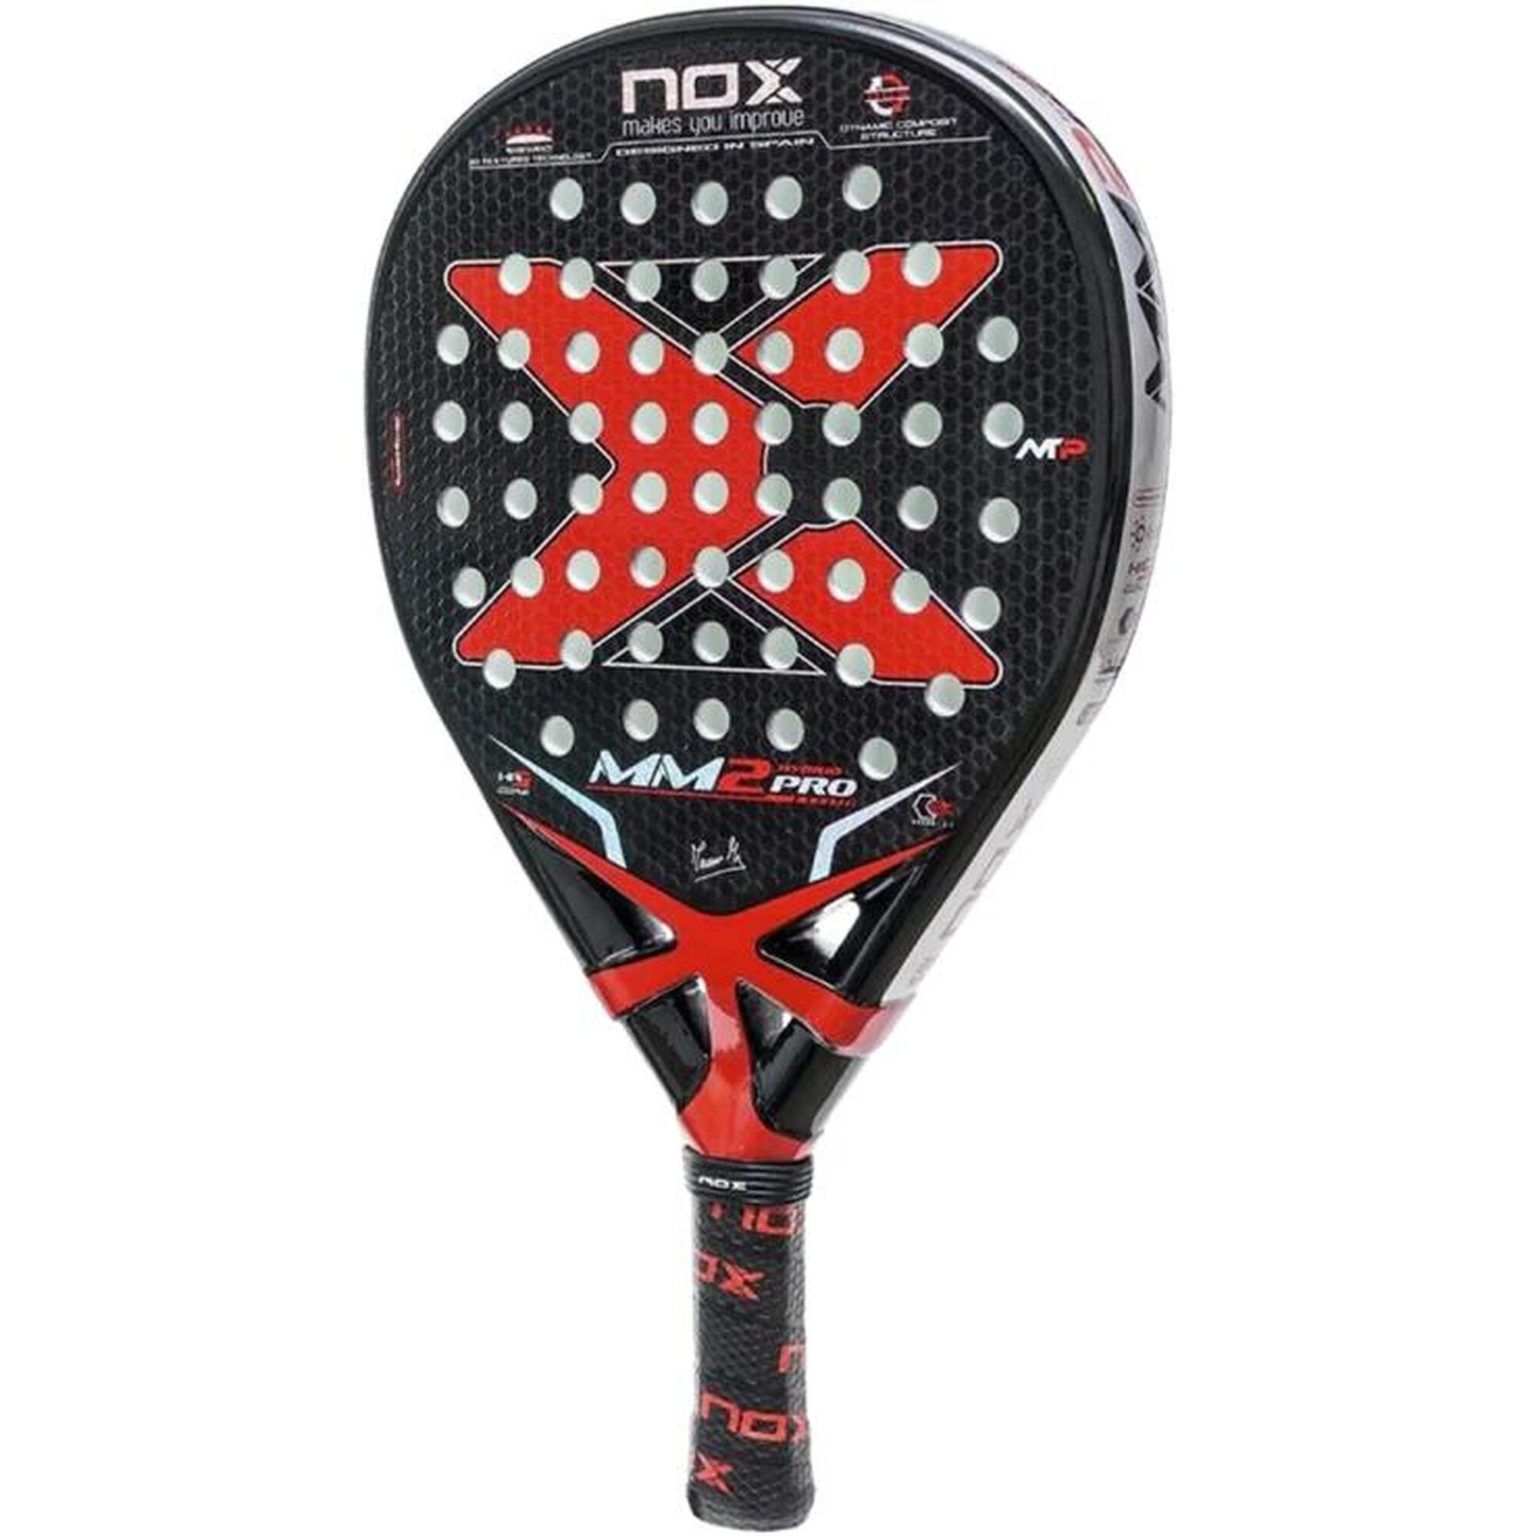 Nox MM2 Pro raquette de padel